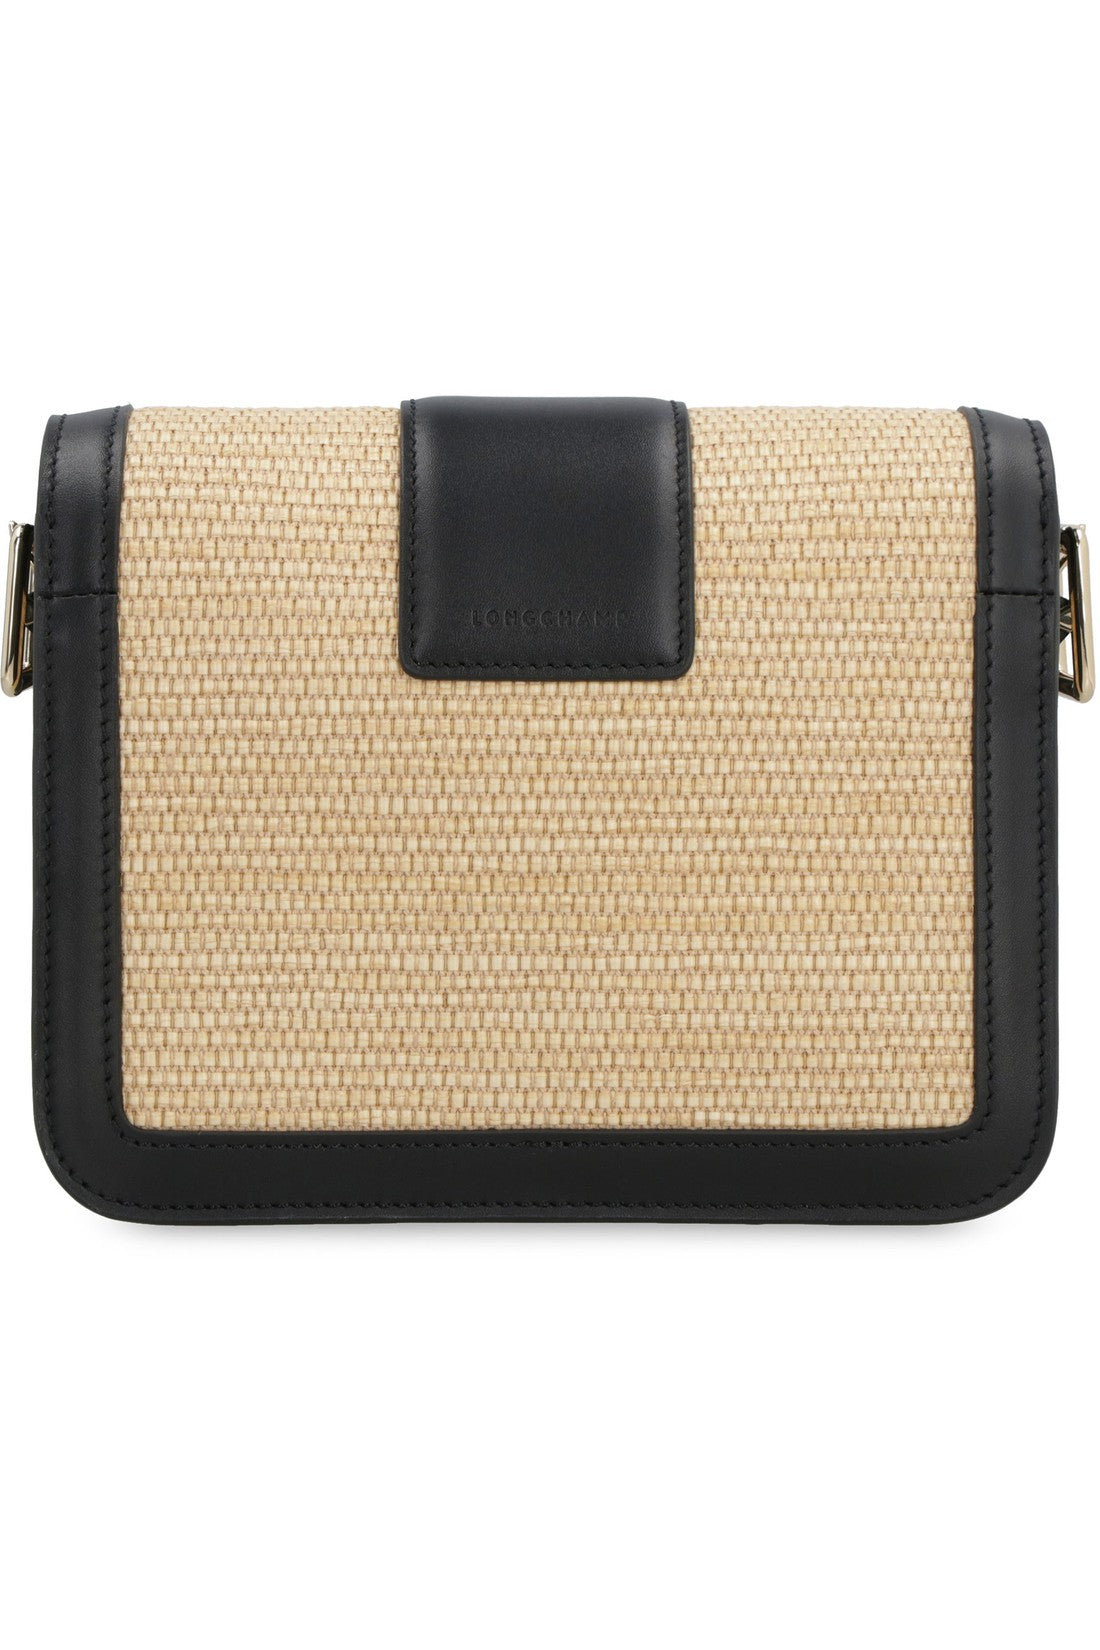 Longchamp-OUTLET-SALE-S Box crossbody bag-ARCHIVIST